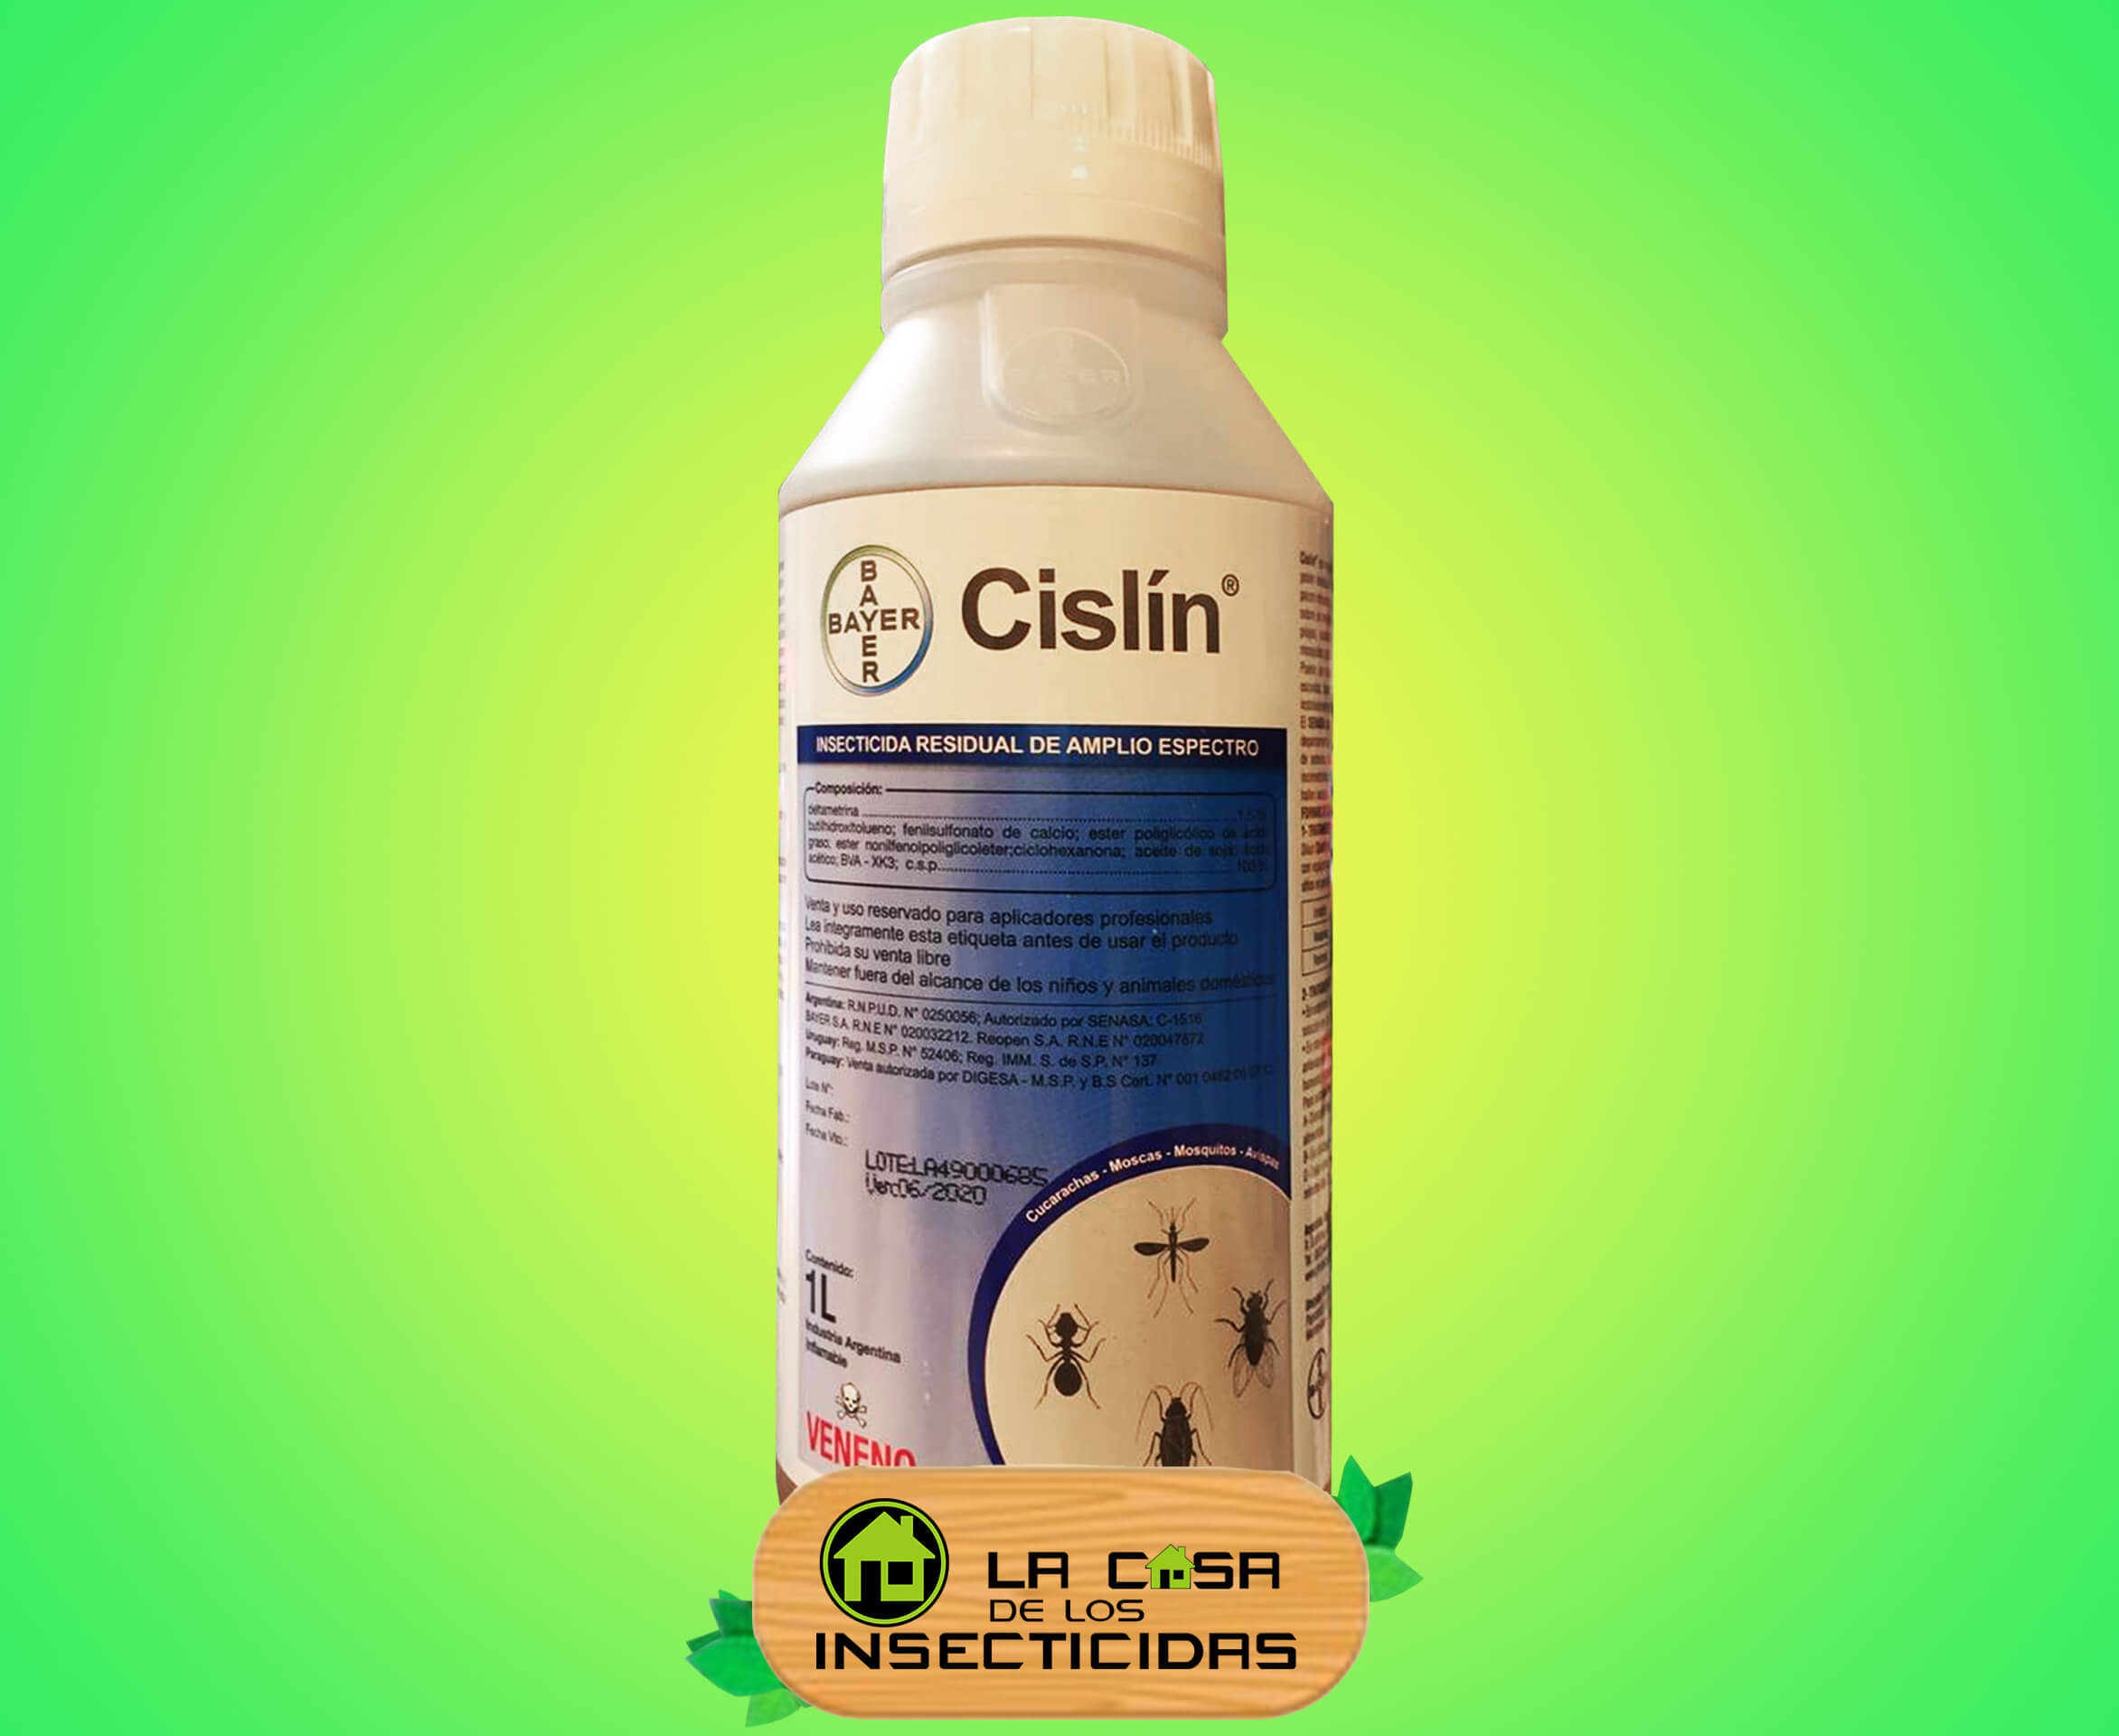 Cislin Insecticida Residual Control de Plagas Bayer